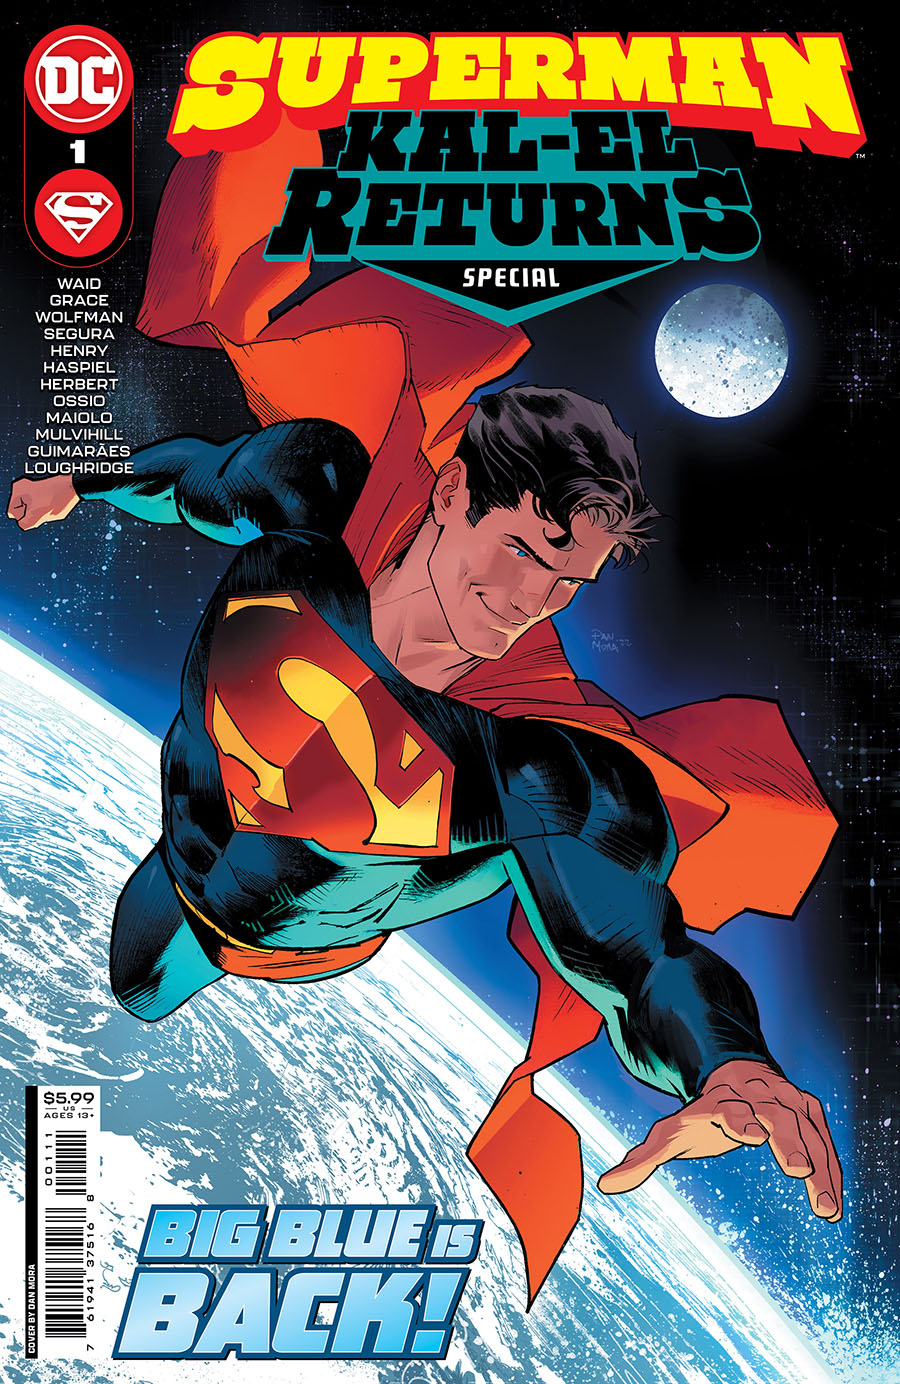 Superman Kal-El Returns Special #1 (One Shot) Cover A Regular Dan Mora Cover (Dark Crisis Tie-In)